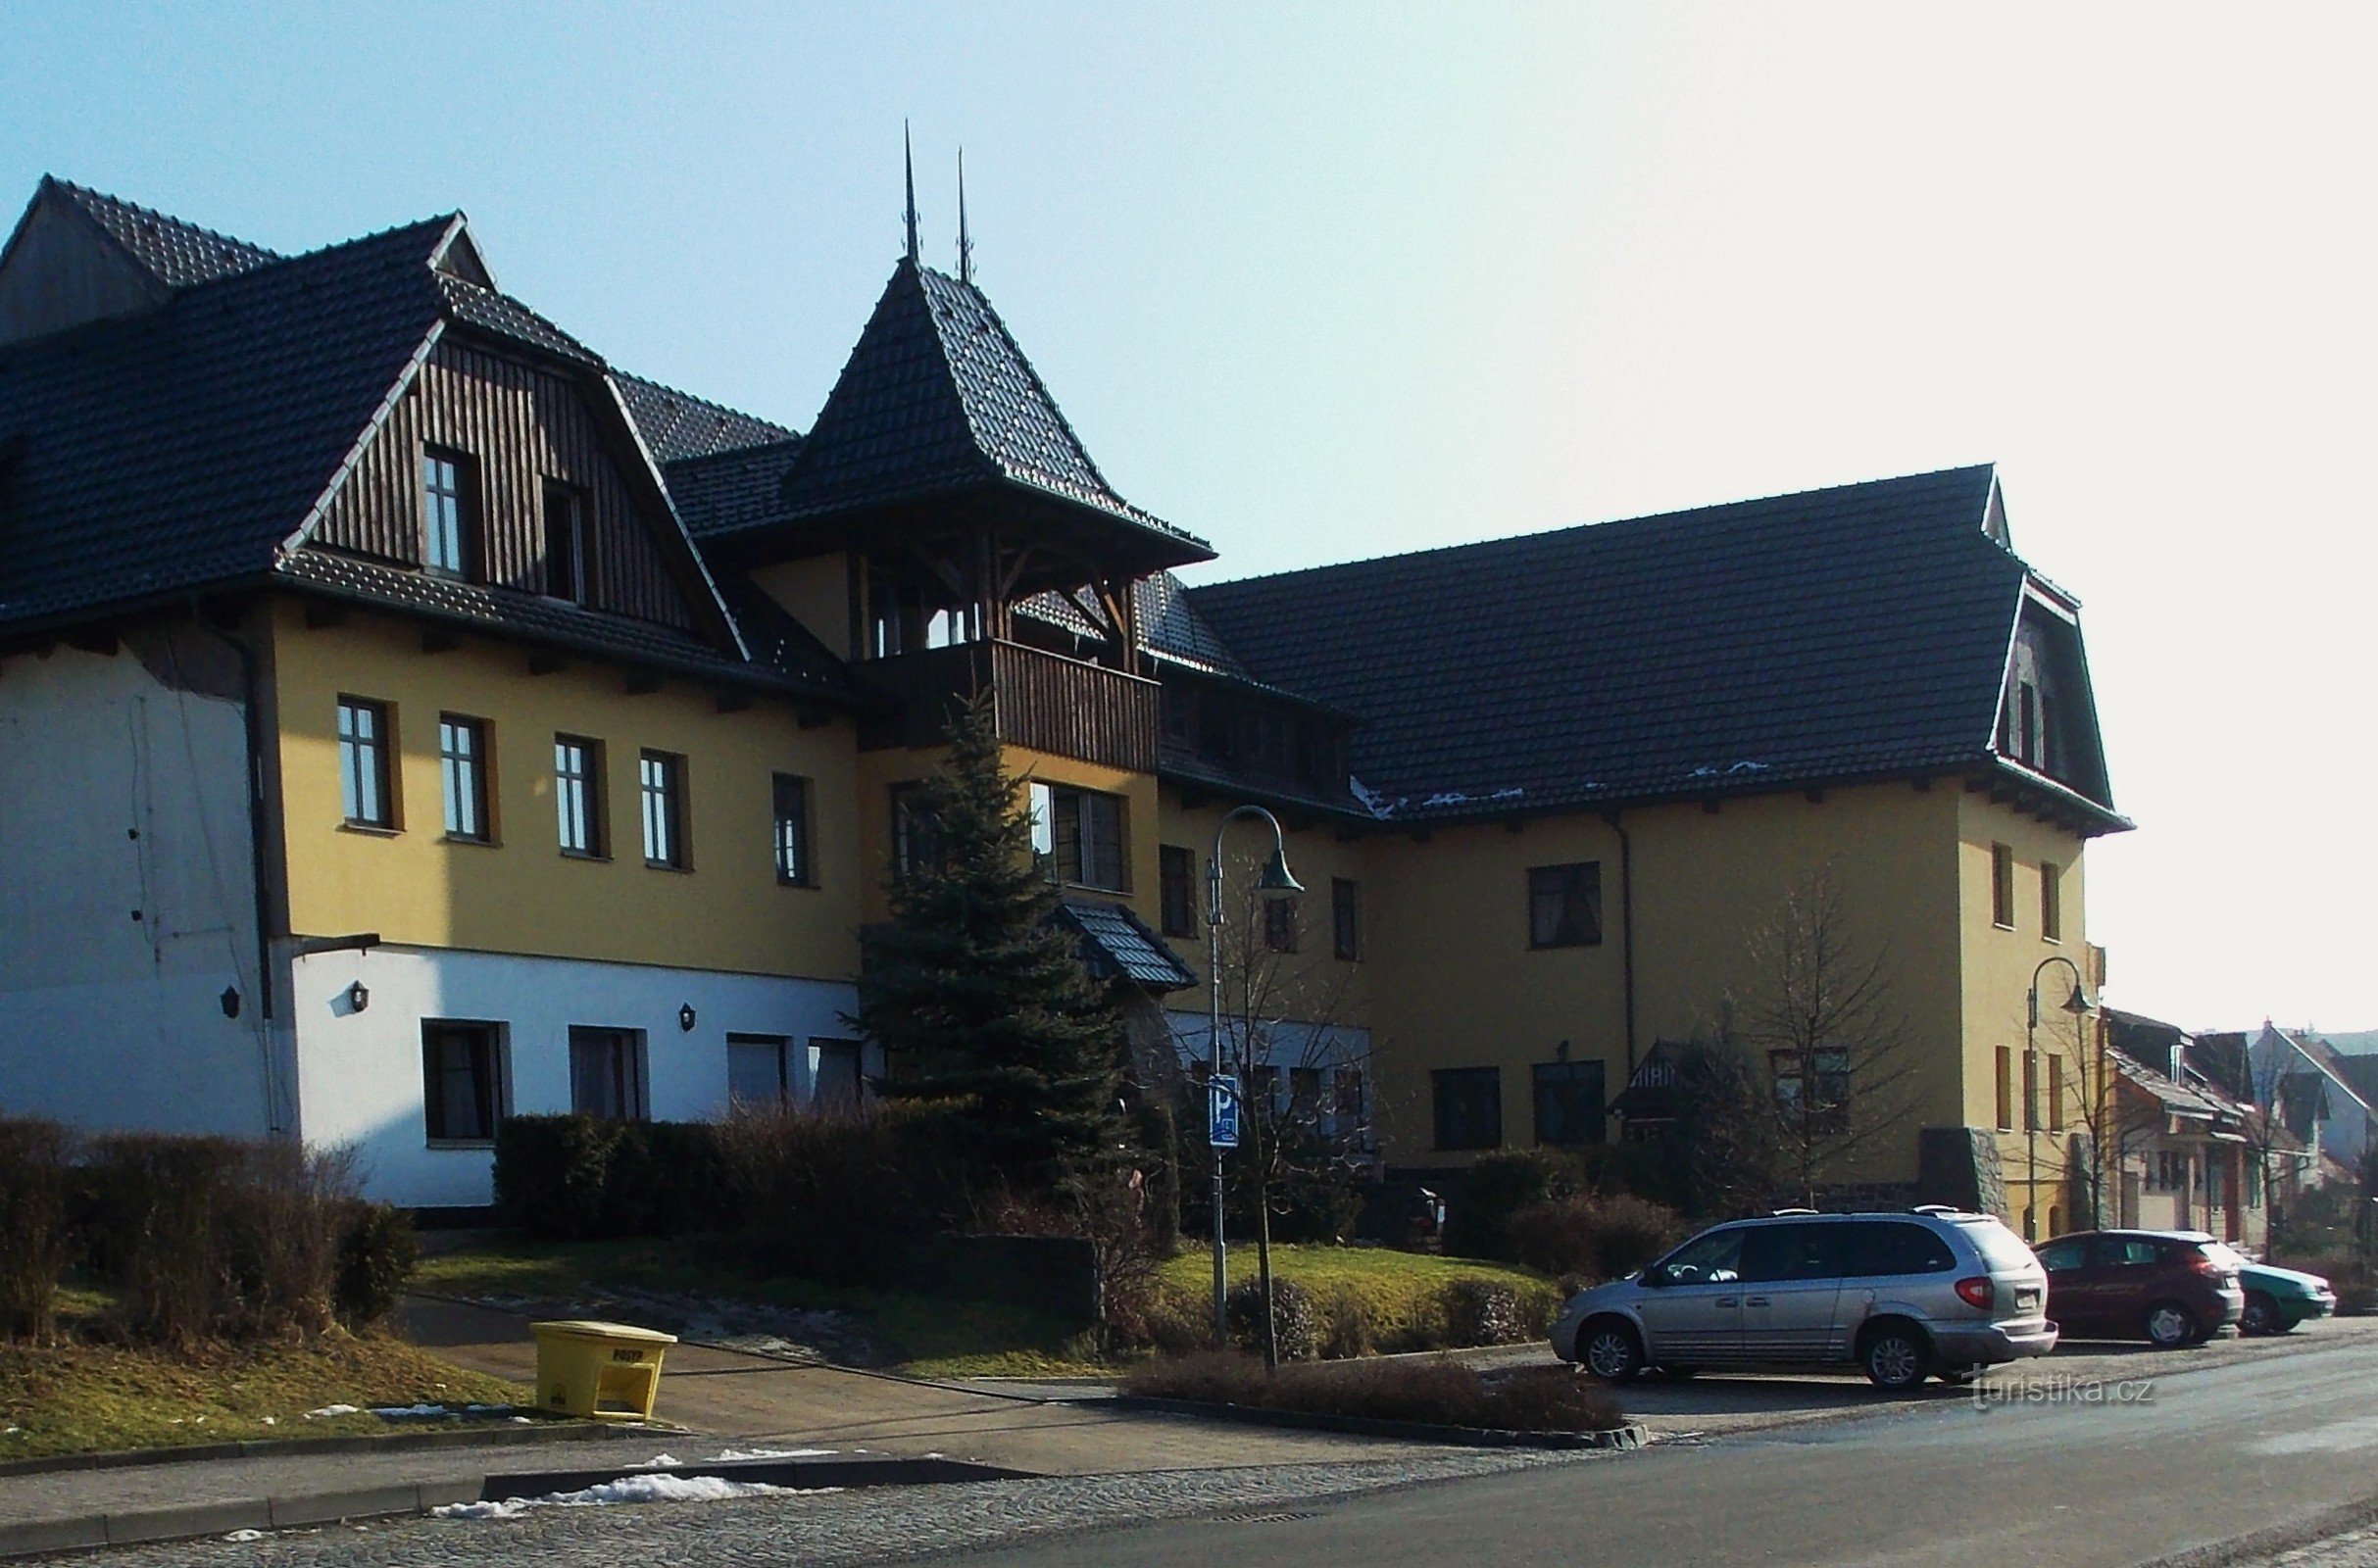 Valašský šenk og Hotel Ogar i Pozlovice nær Luhačovice